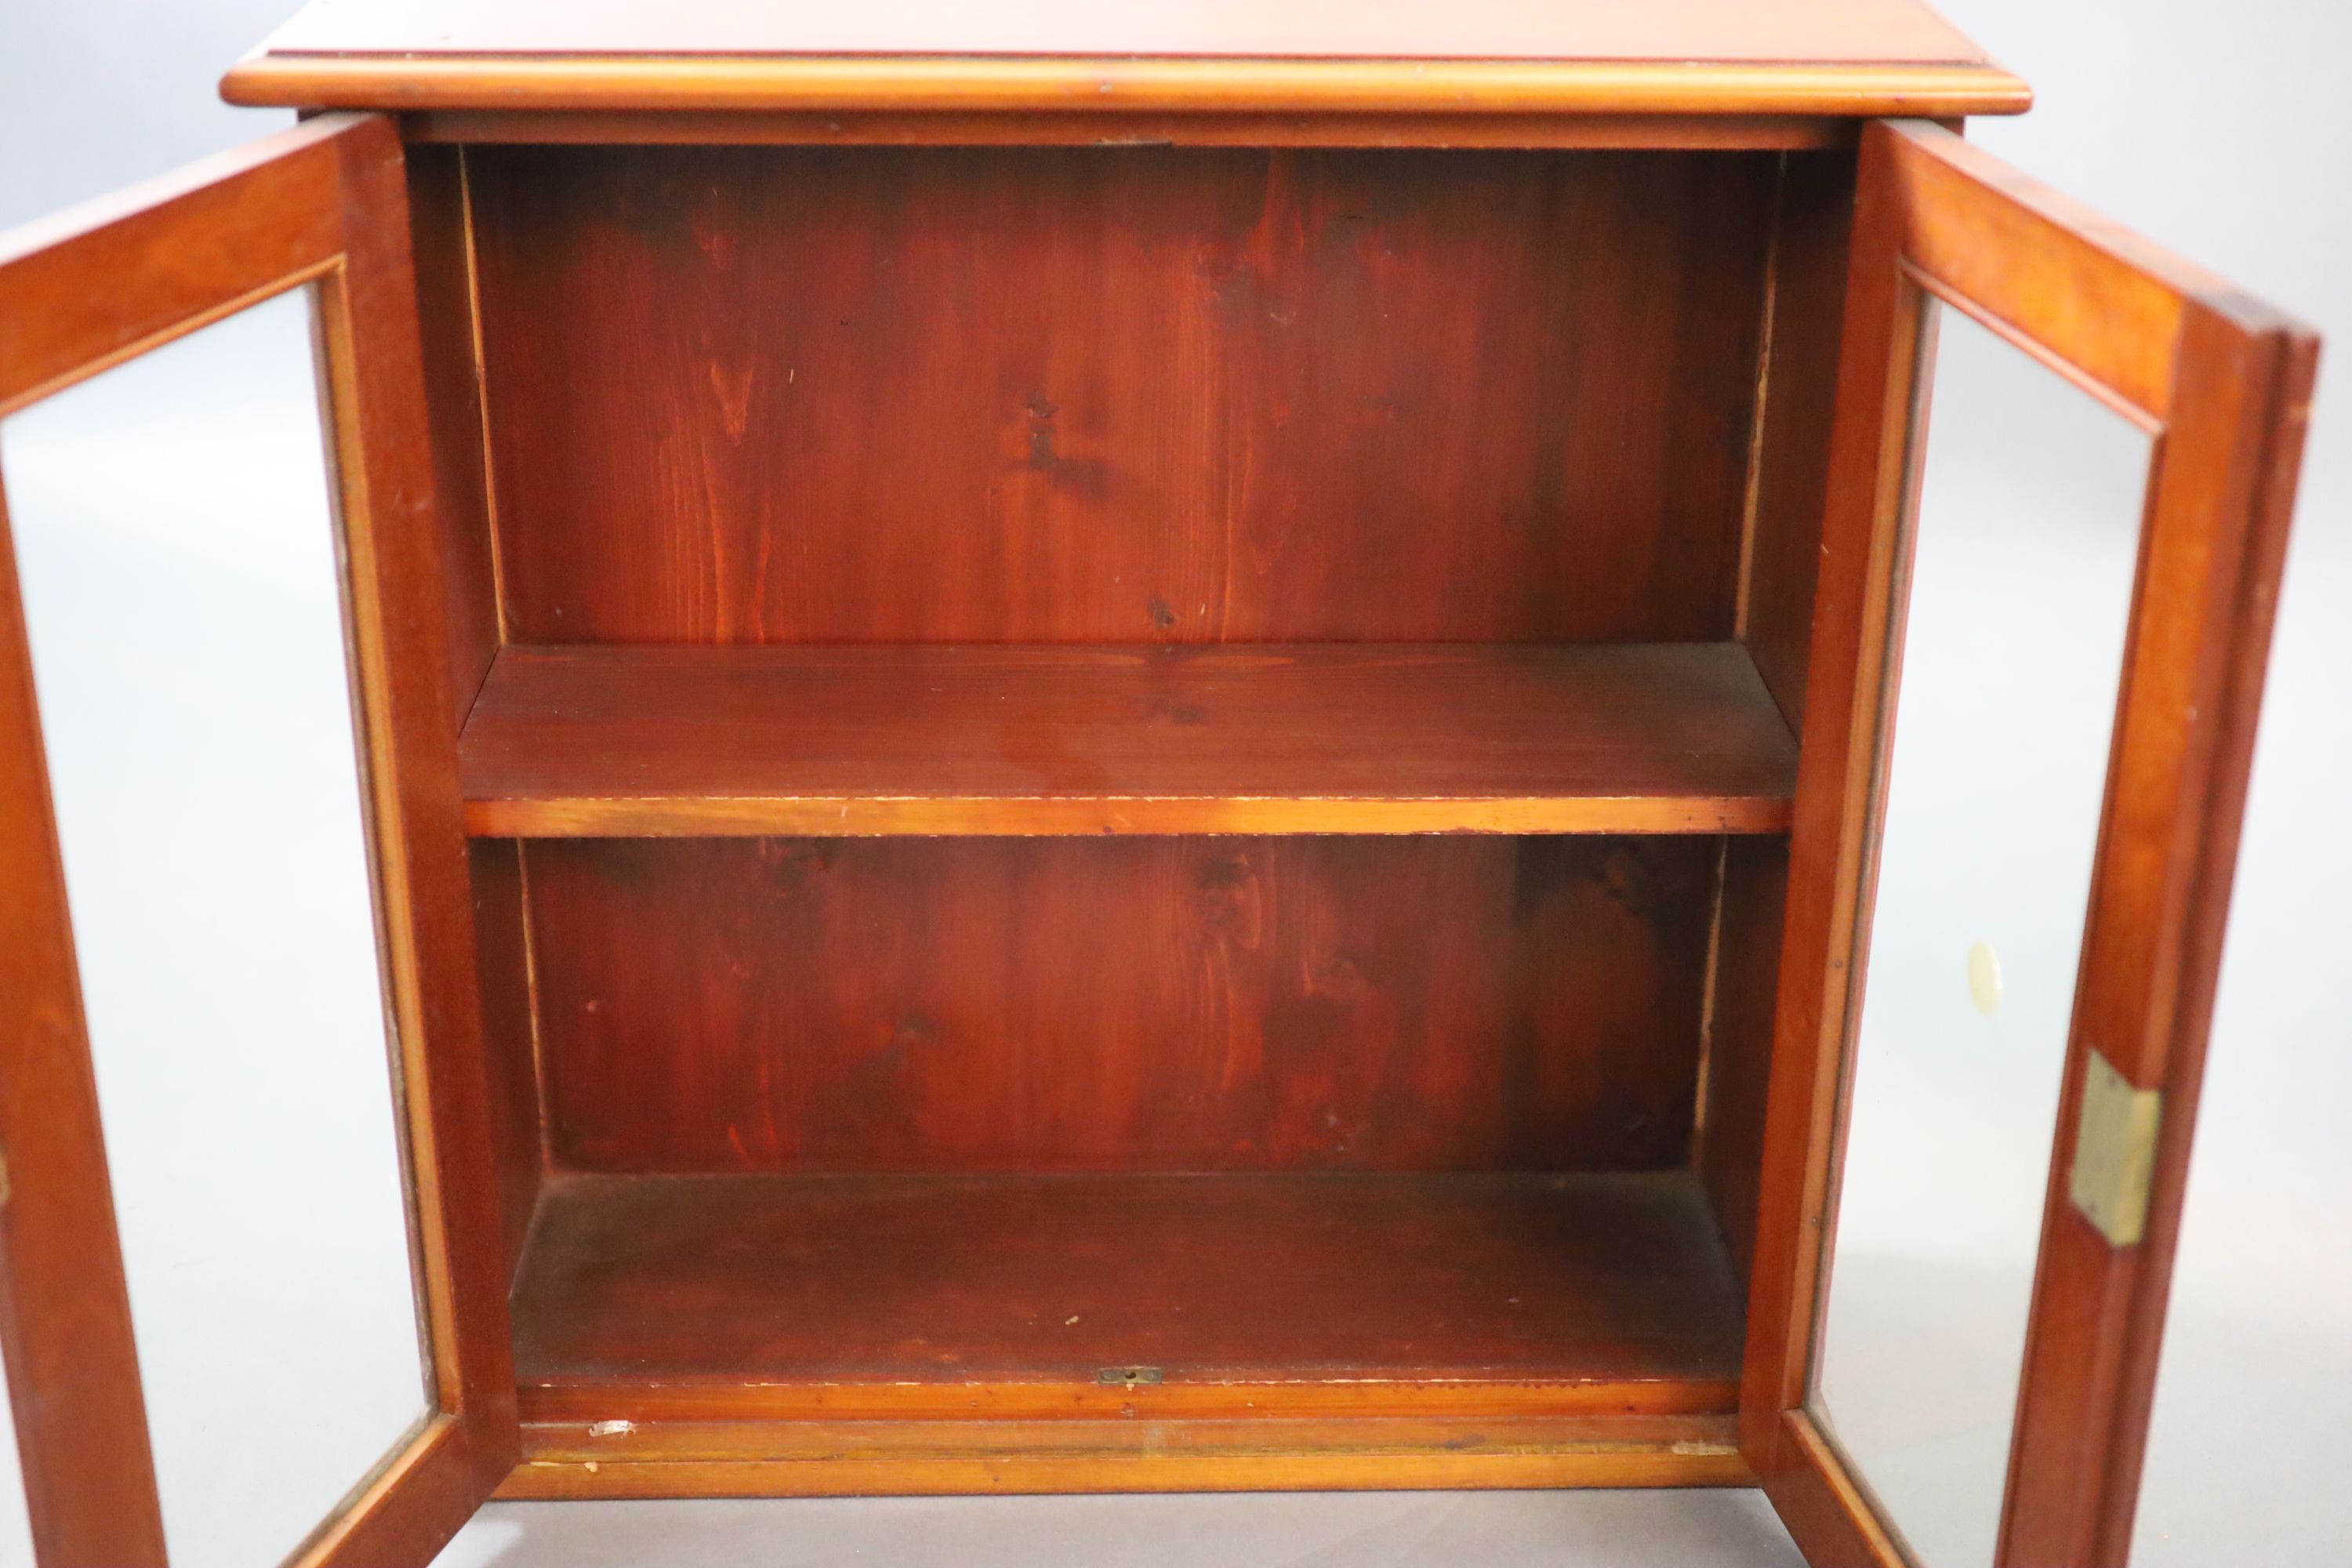 A small Edwardian mahogany wall cabinet, W.58cm D.21cm H.57cm